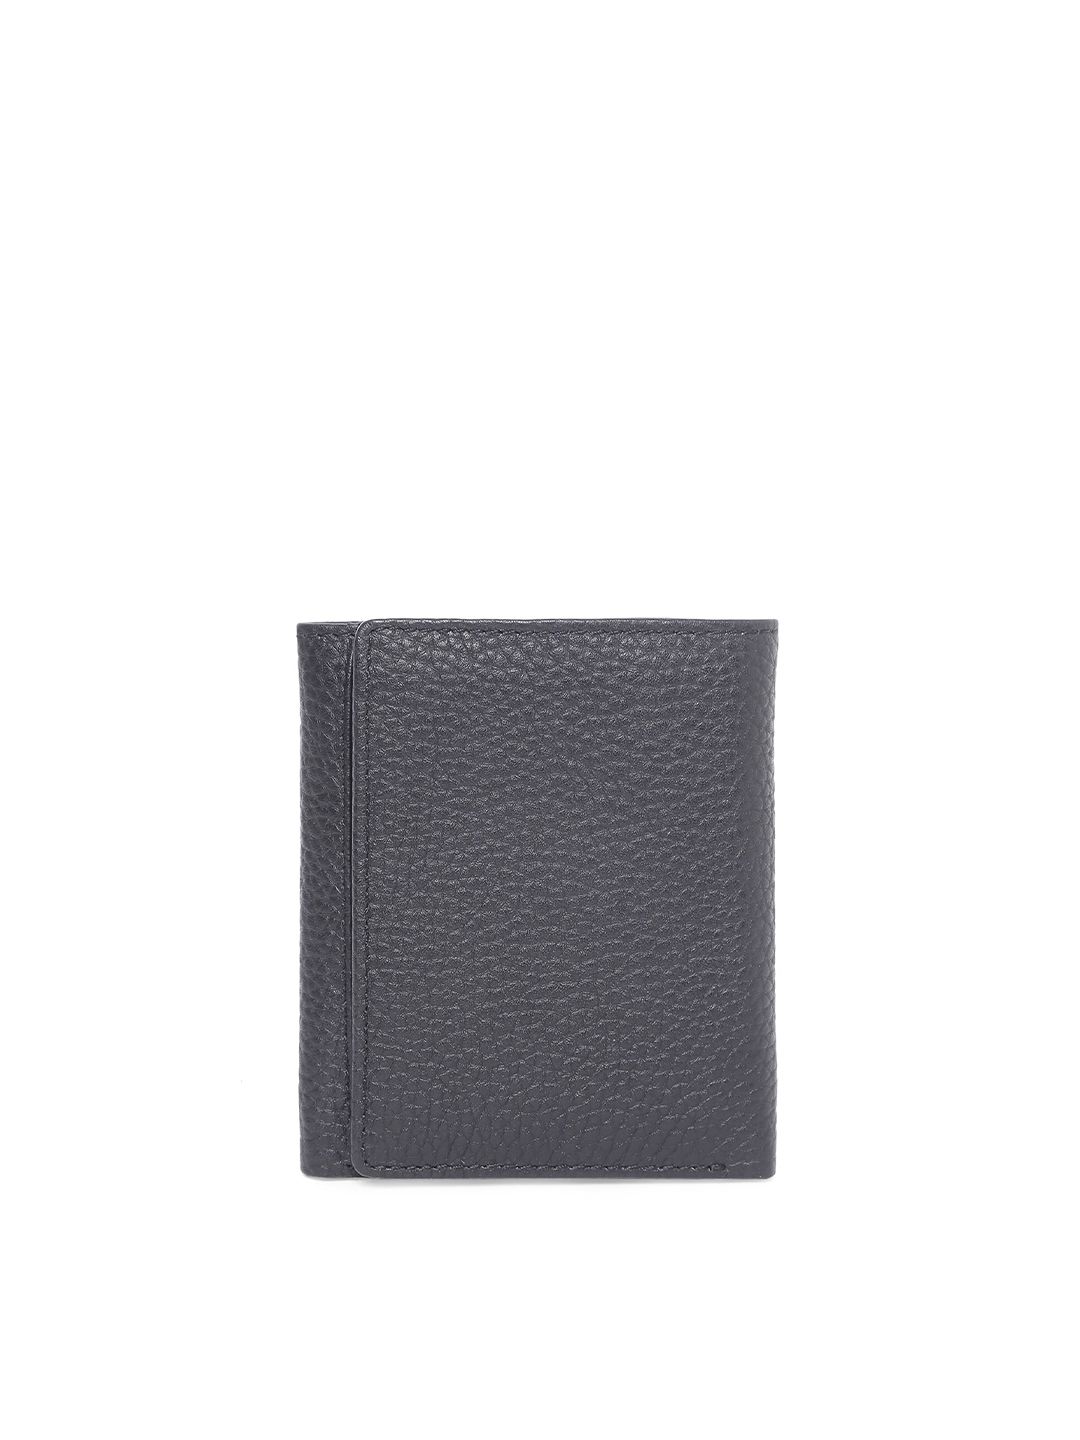 Sassora Aria Black Small Leather Travel Wallet for Women